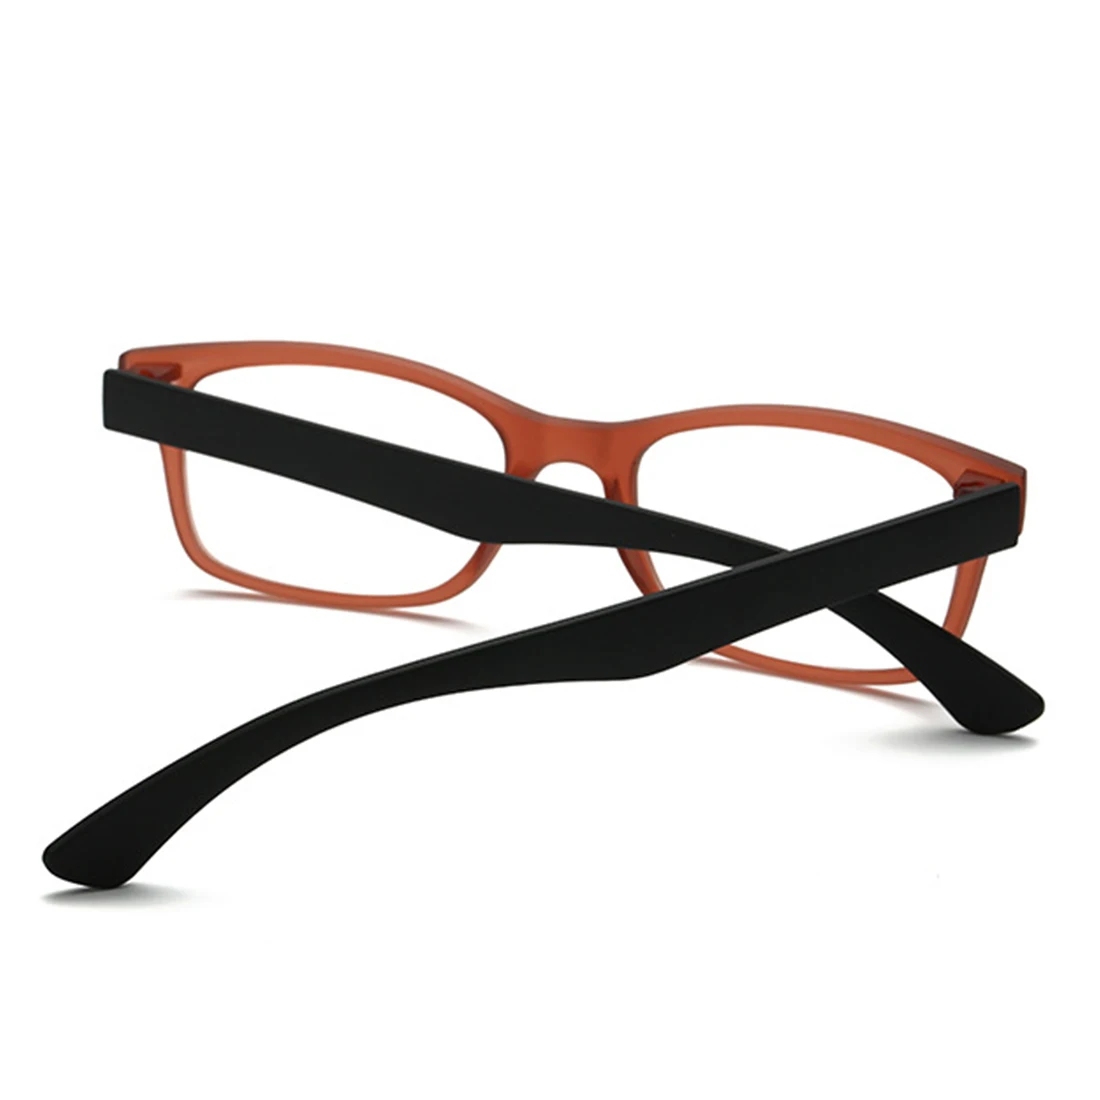 Новое зрение увеличительное стекло унисекс очки увеличение для иглы чтения лупа Смотреть все, что вам нужно с легкостью